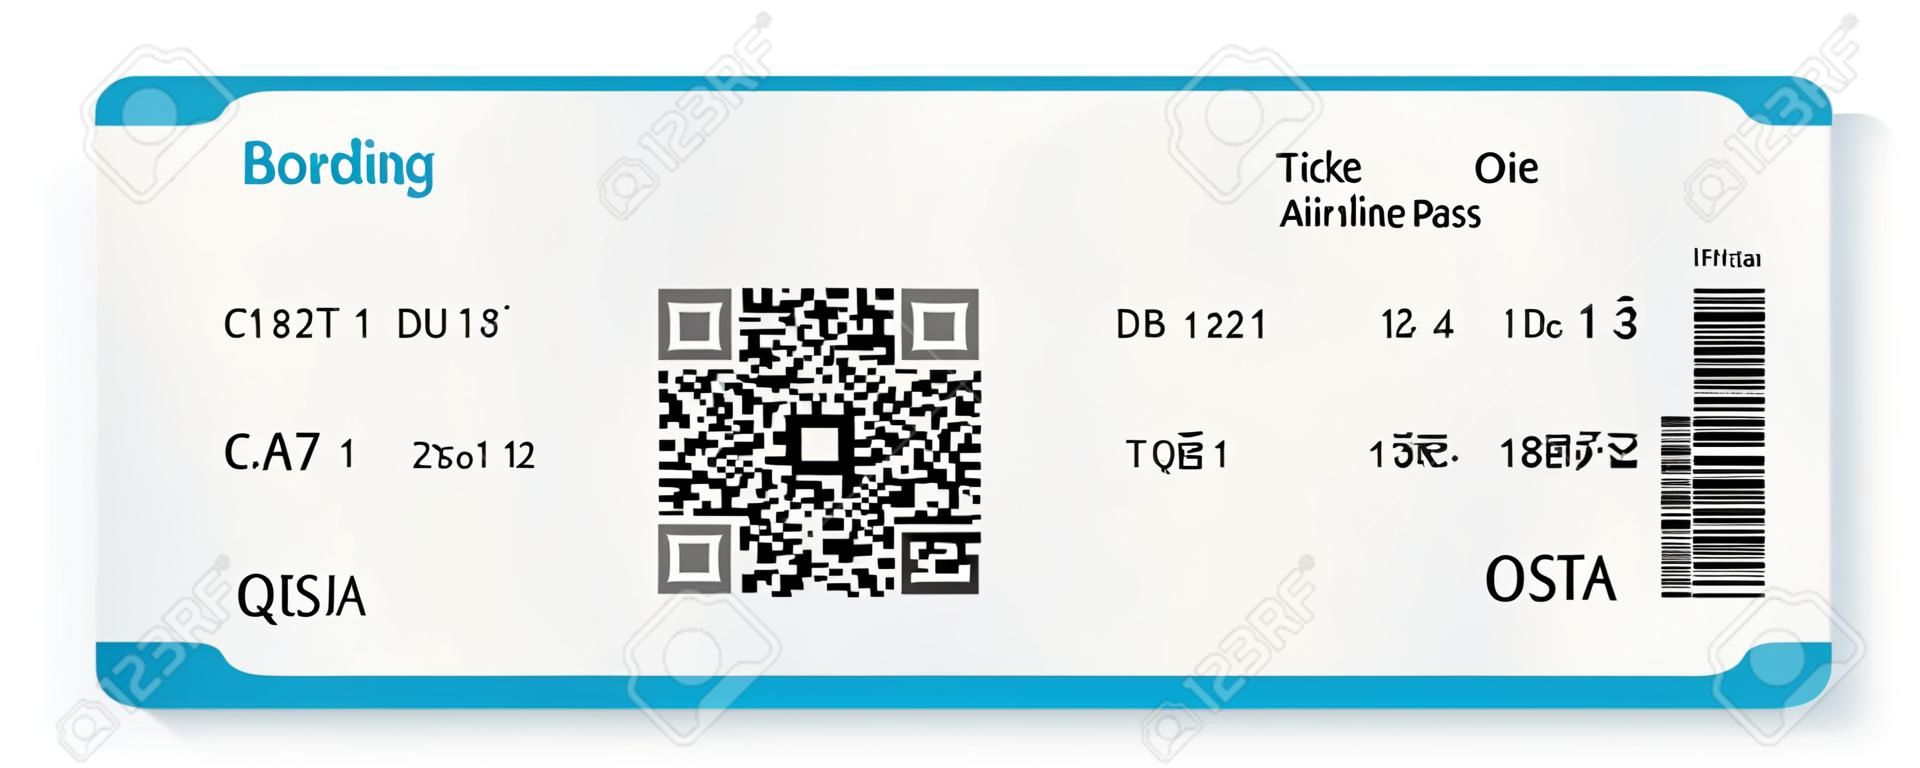 QR2 コード パス券を搭乗航空会社のベクトル画像白で隔離されます。ベクトル イラスト